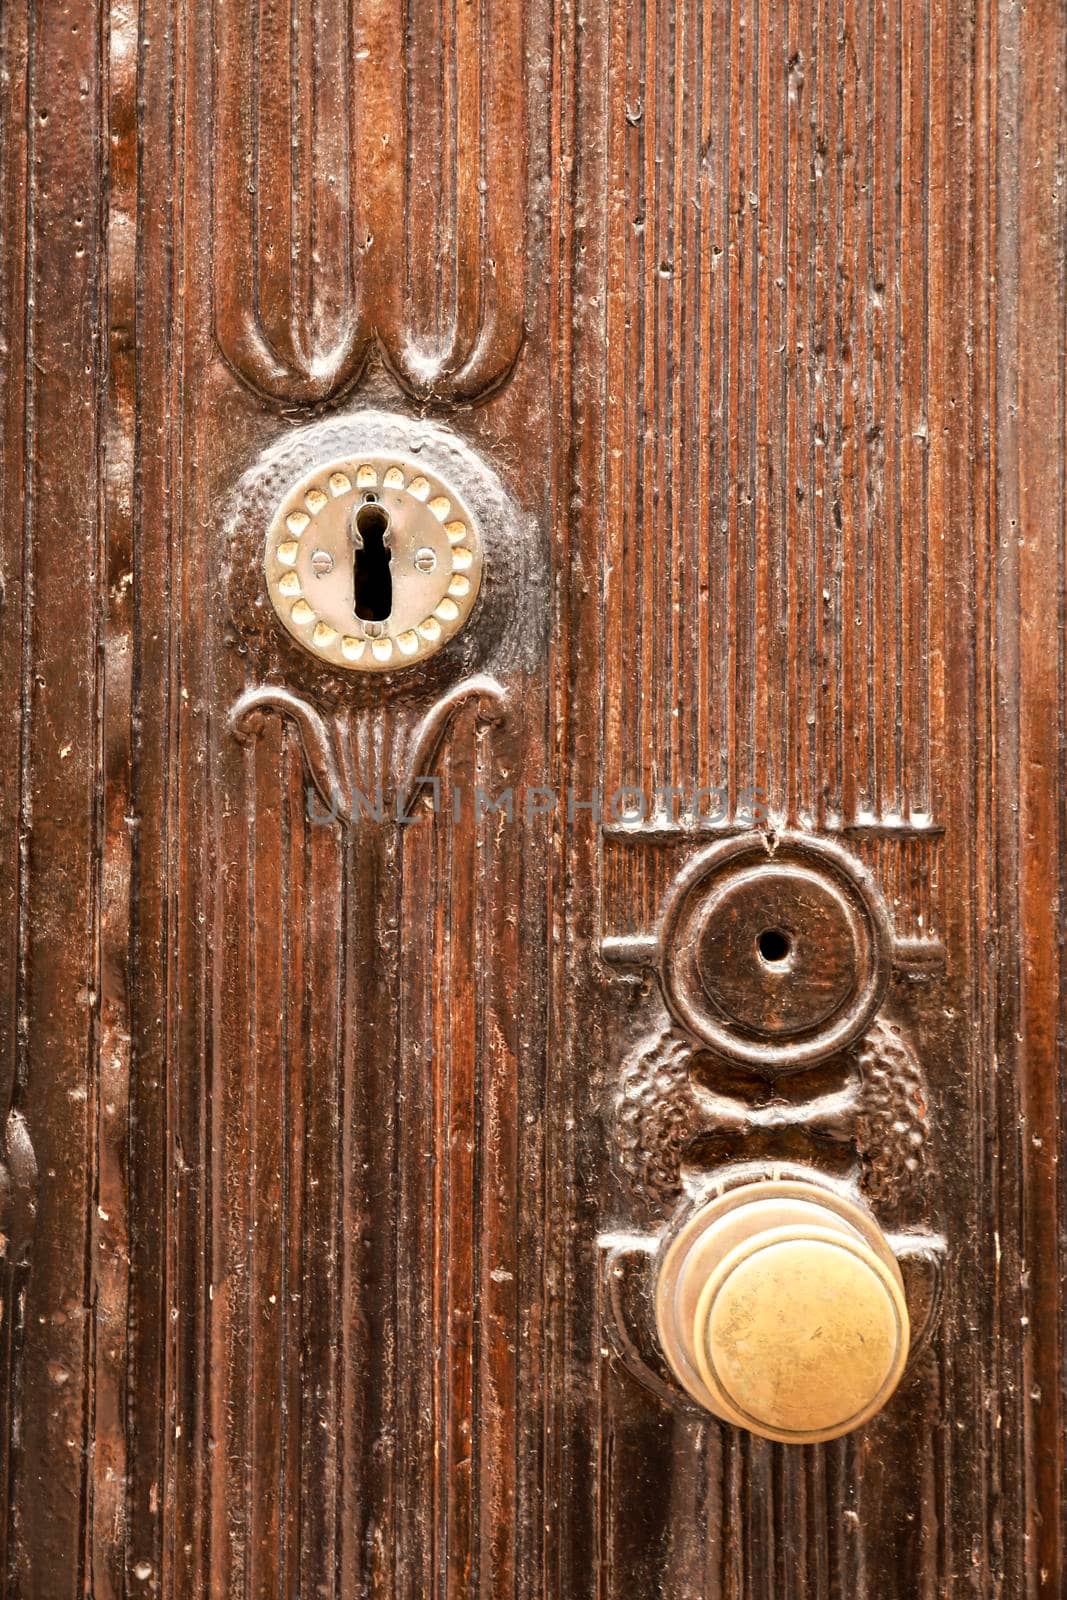 Golden doorknocker with modernist style on old wooden door by soniabonet